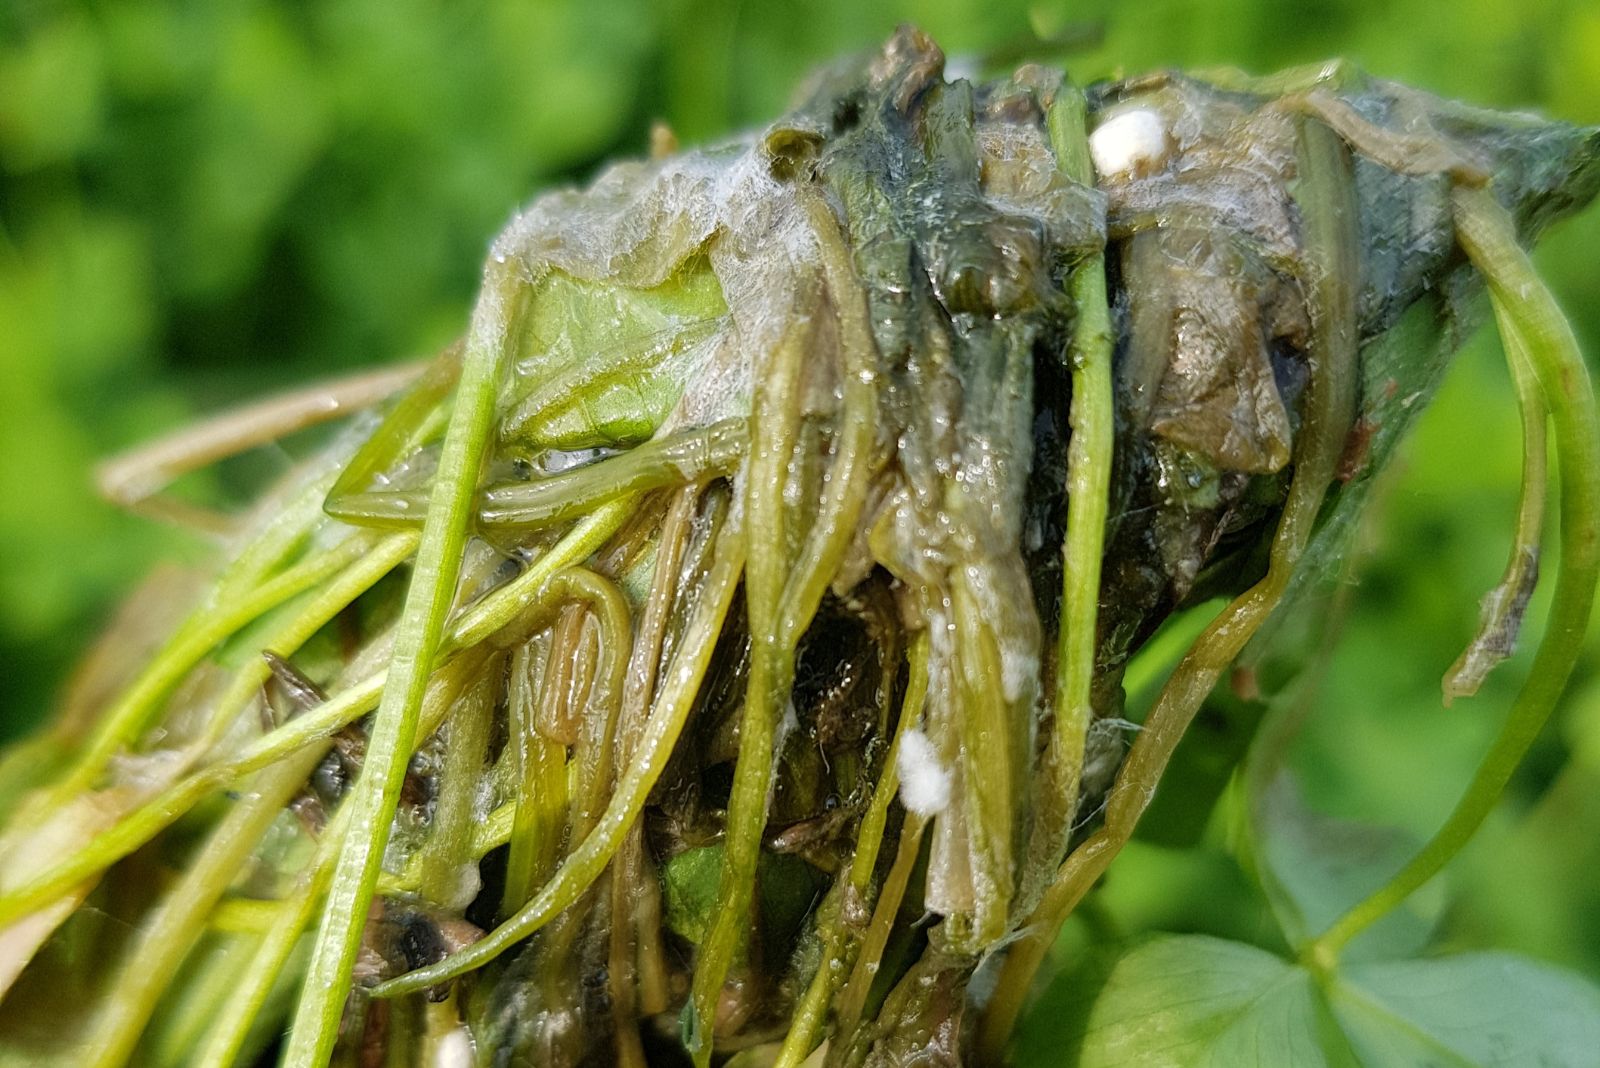 Berseem stem and crown root rot caused by Sclerotinia sclerotiorum